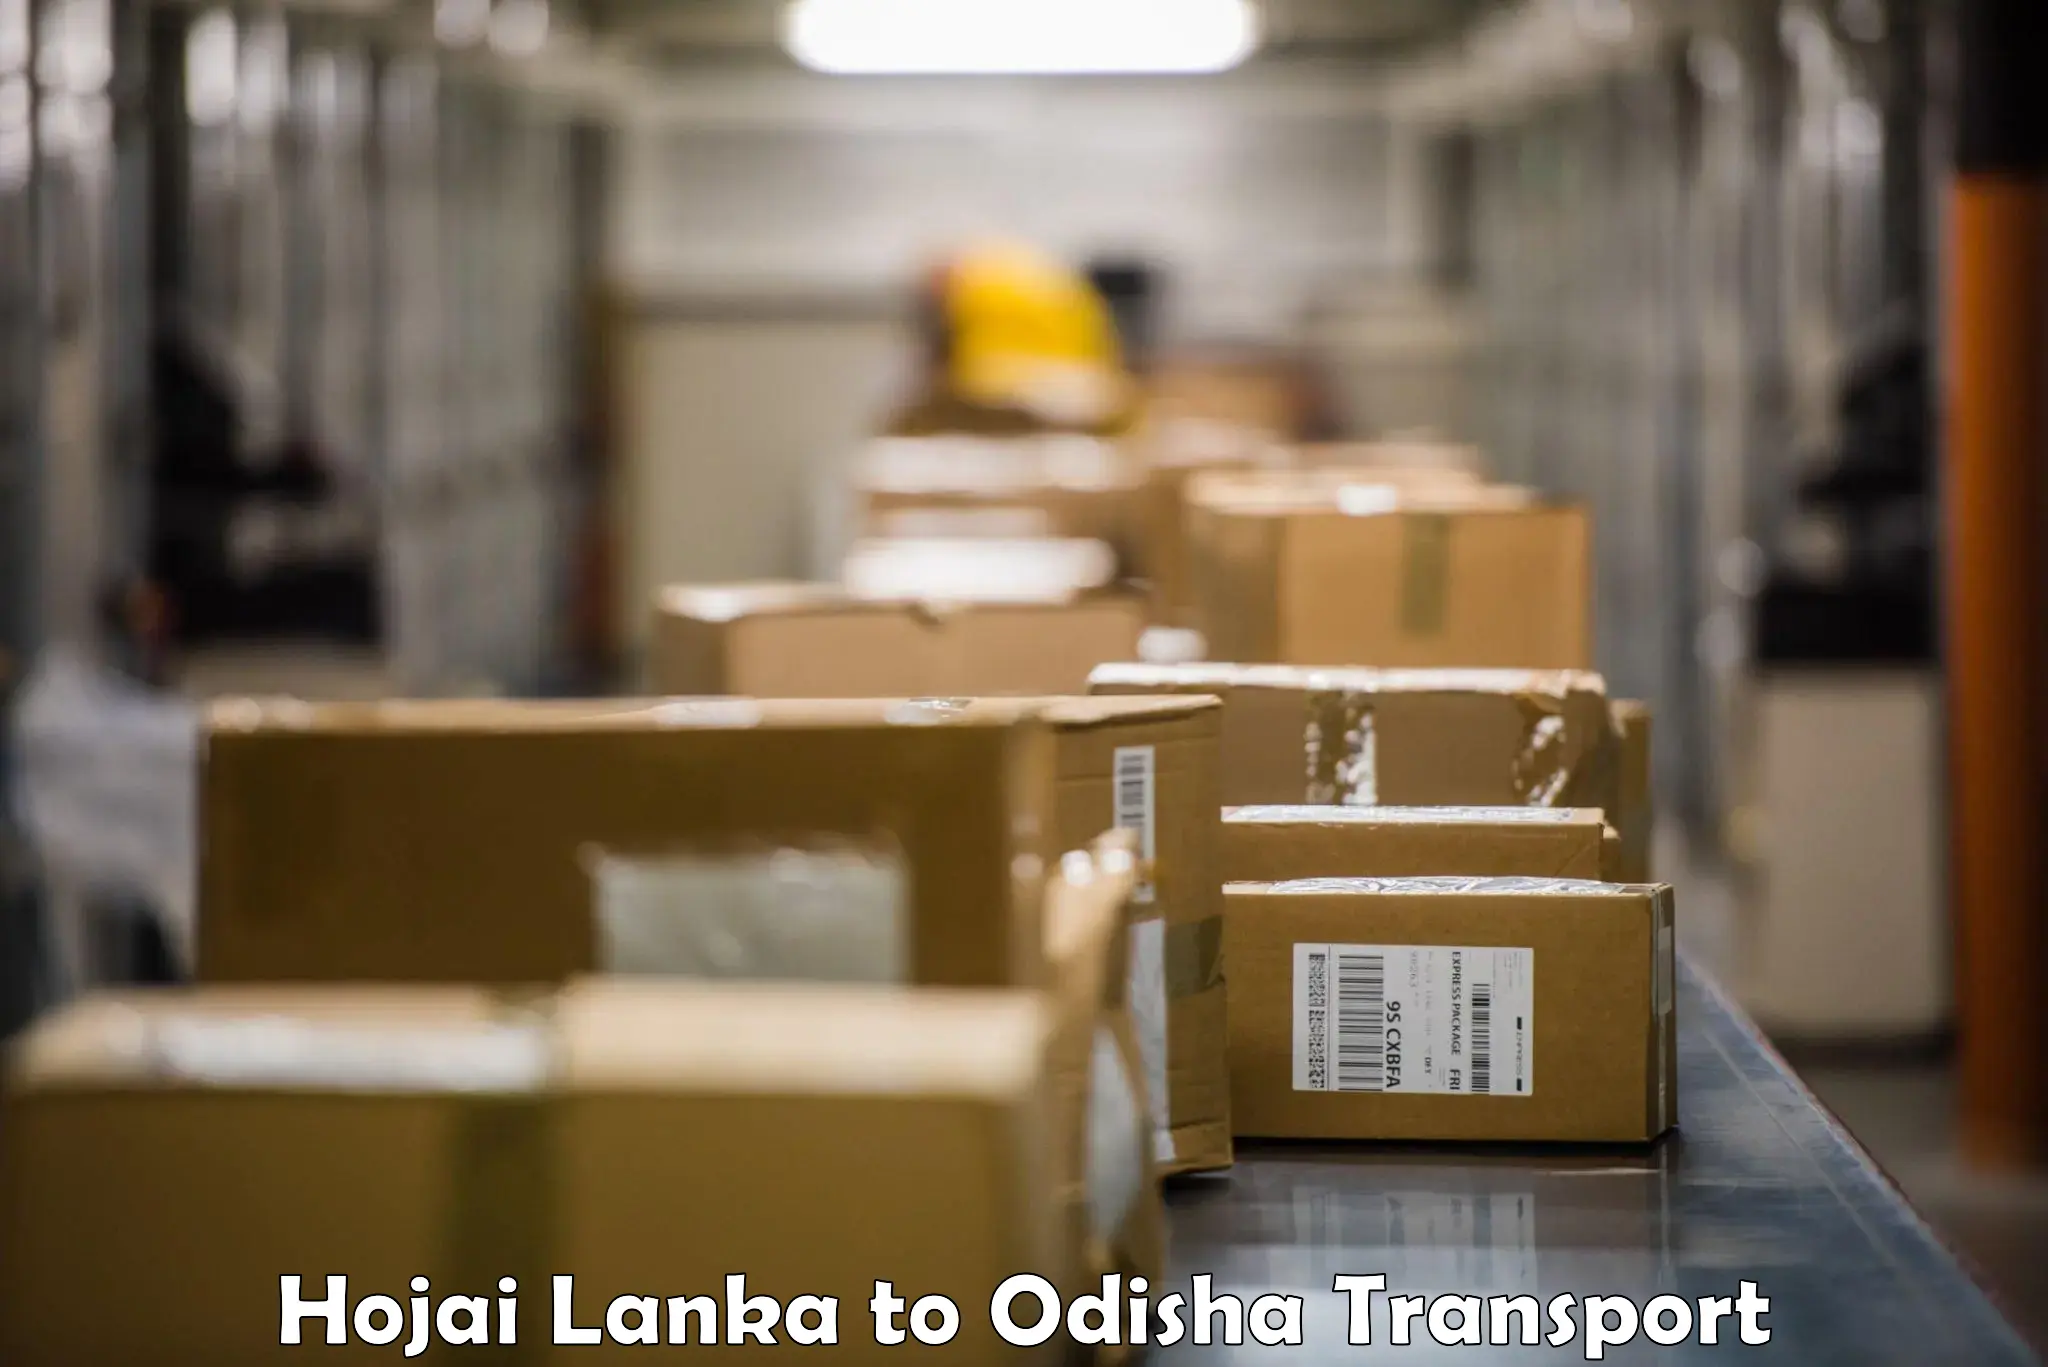 Lorry transport service Hojai Lanka to Kakiriguma